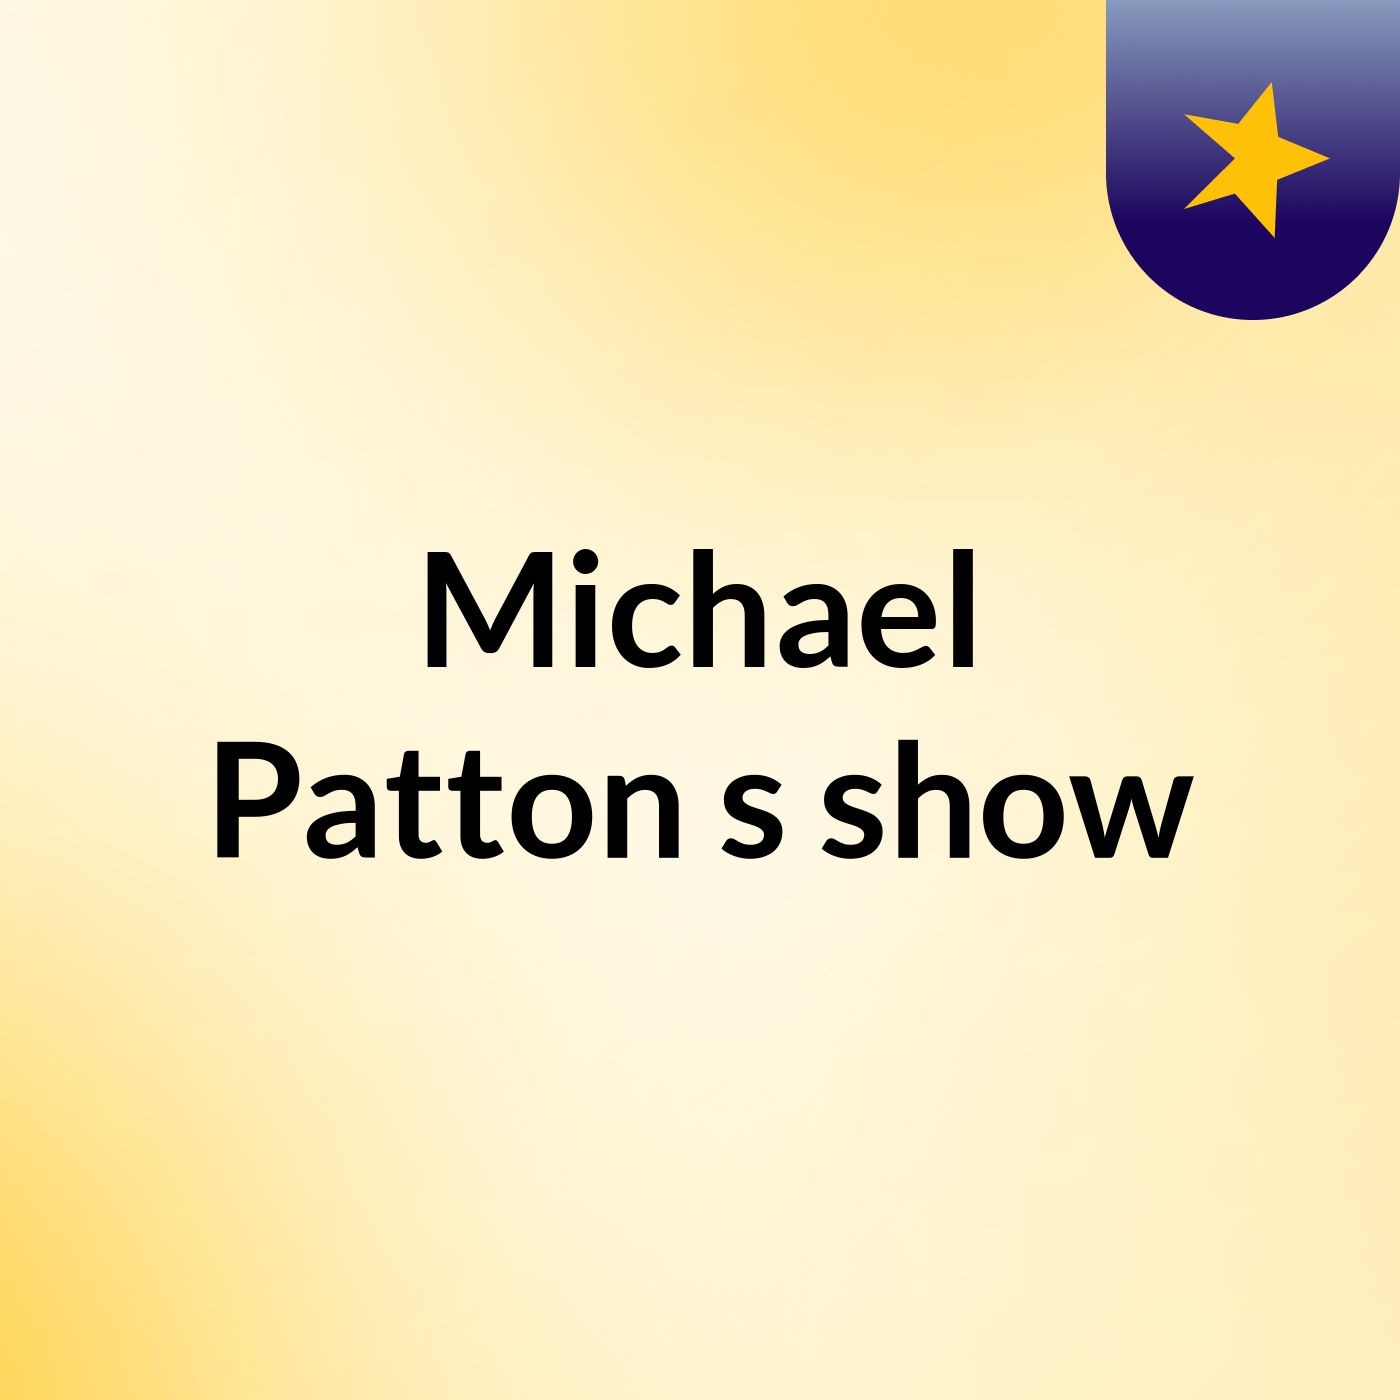 Michael Patton's show